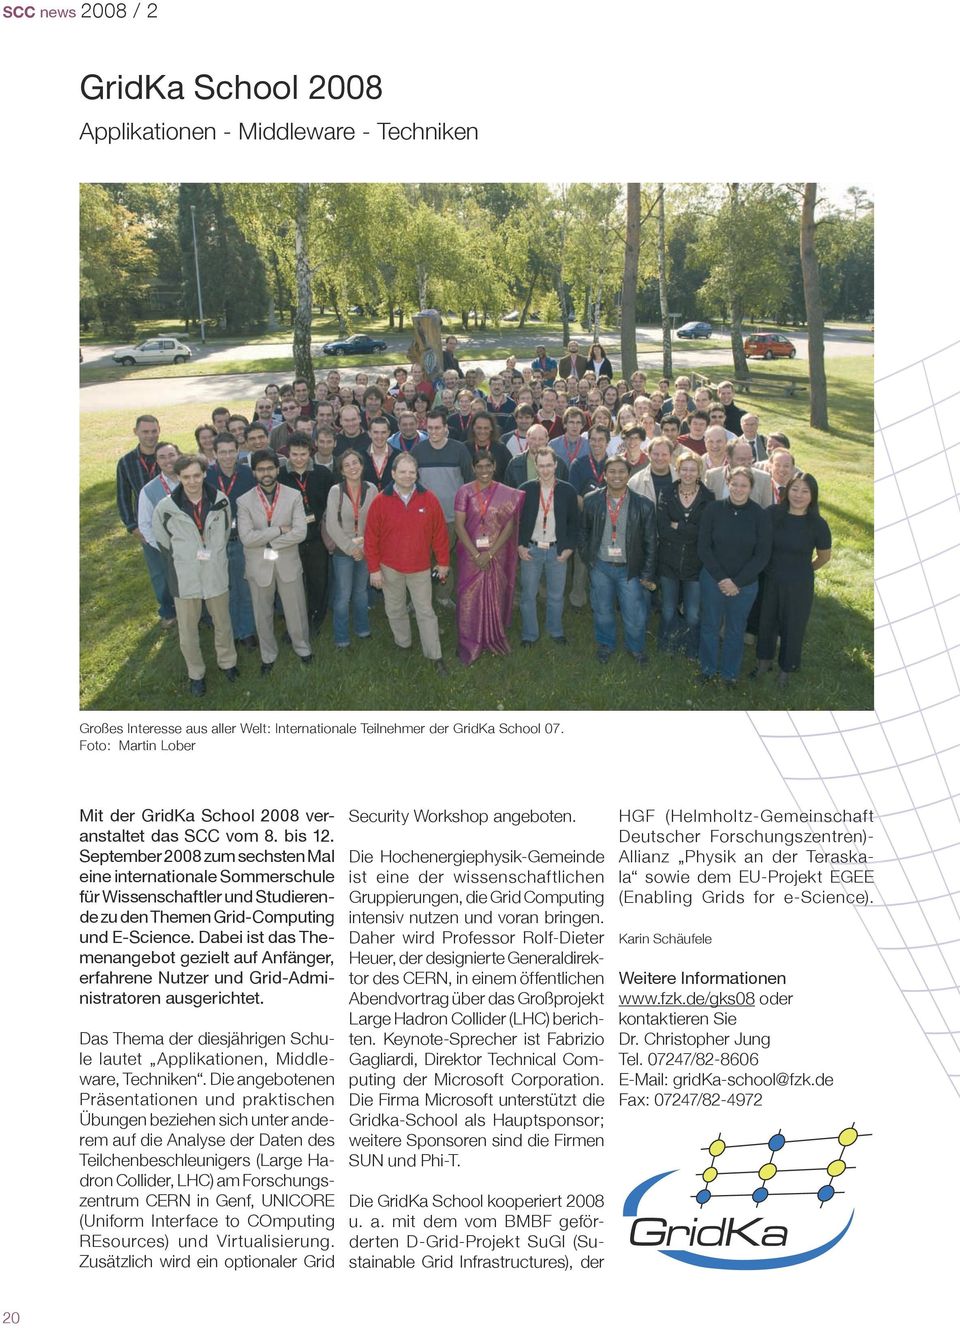 September 2008 zum sechsten Mal eine internationale Sommerschule für Wissenschaftler und Studierende zu den Themen Grid-Computing und E-Science.